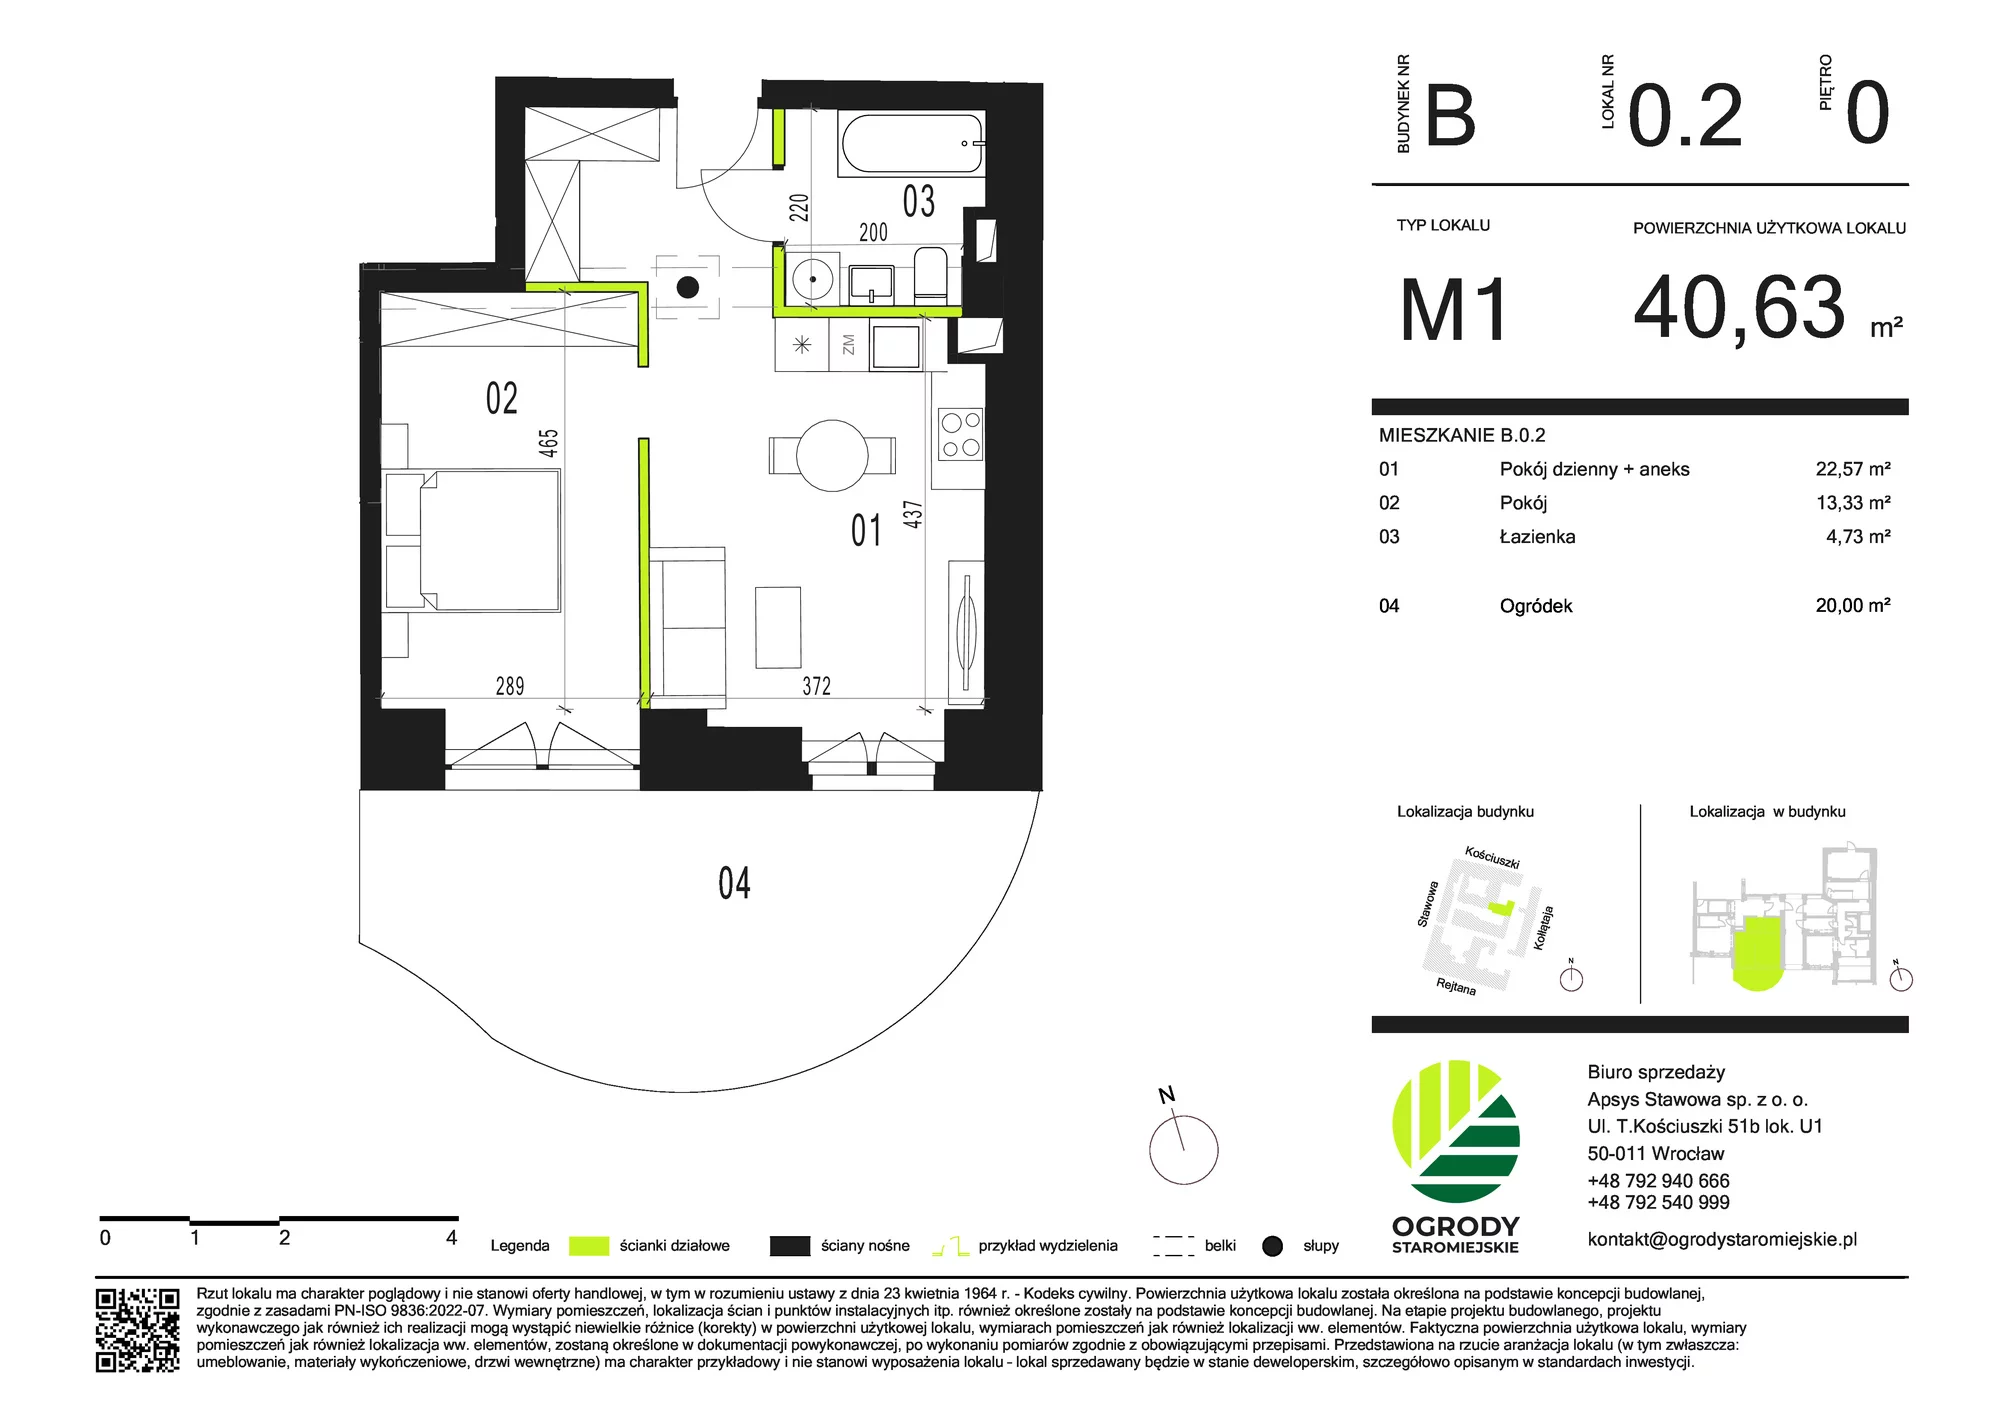 Mieszkanie 40,63 m², parter, oferta nr B.0.2, Ogrody Staromiejskie, Wrocław, Przedmieście Świdnickie, ul. Stawowa 10